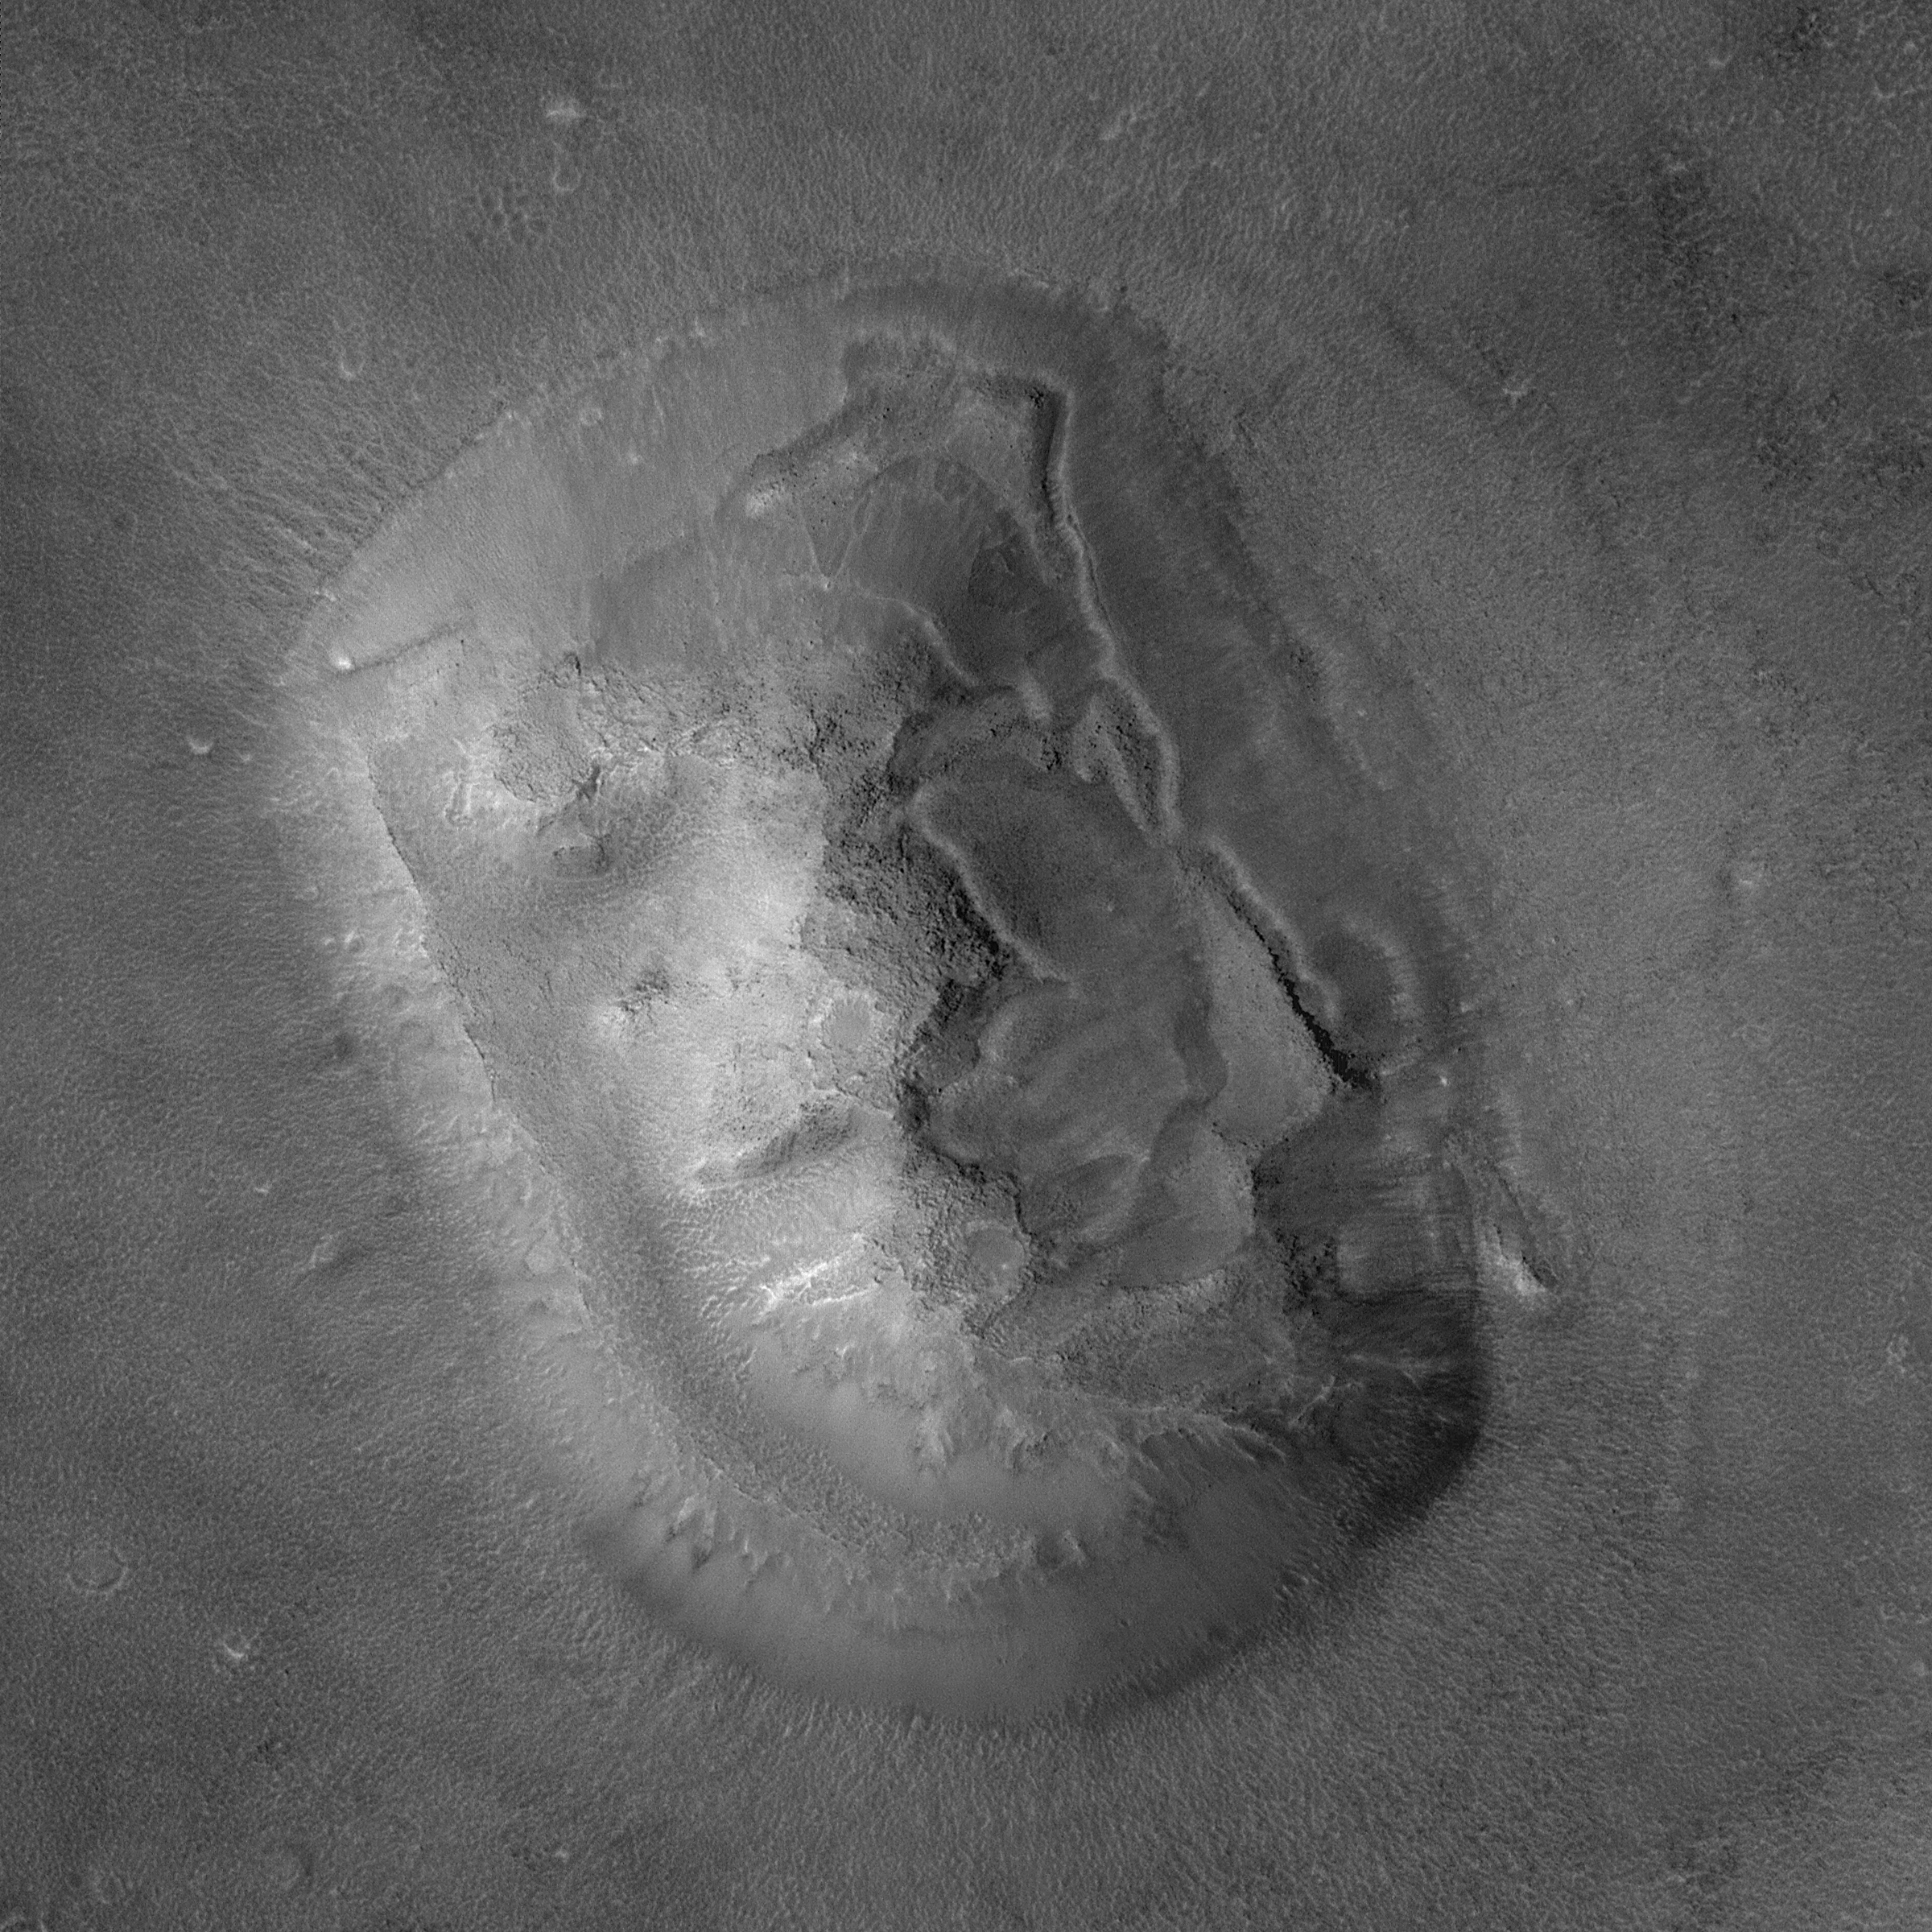 Знаменитое "Лицо на Марсе" в высоком качестве